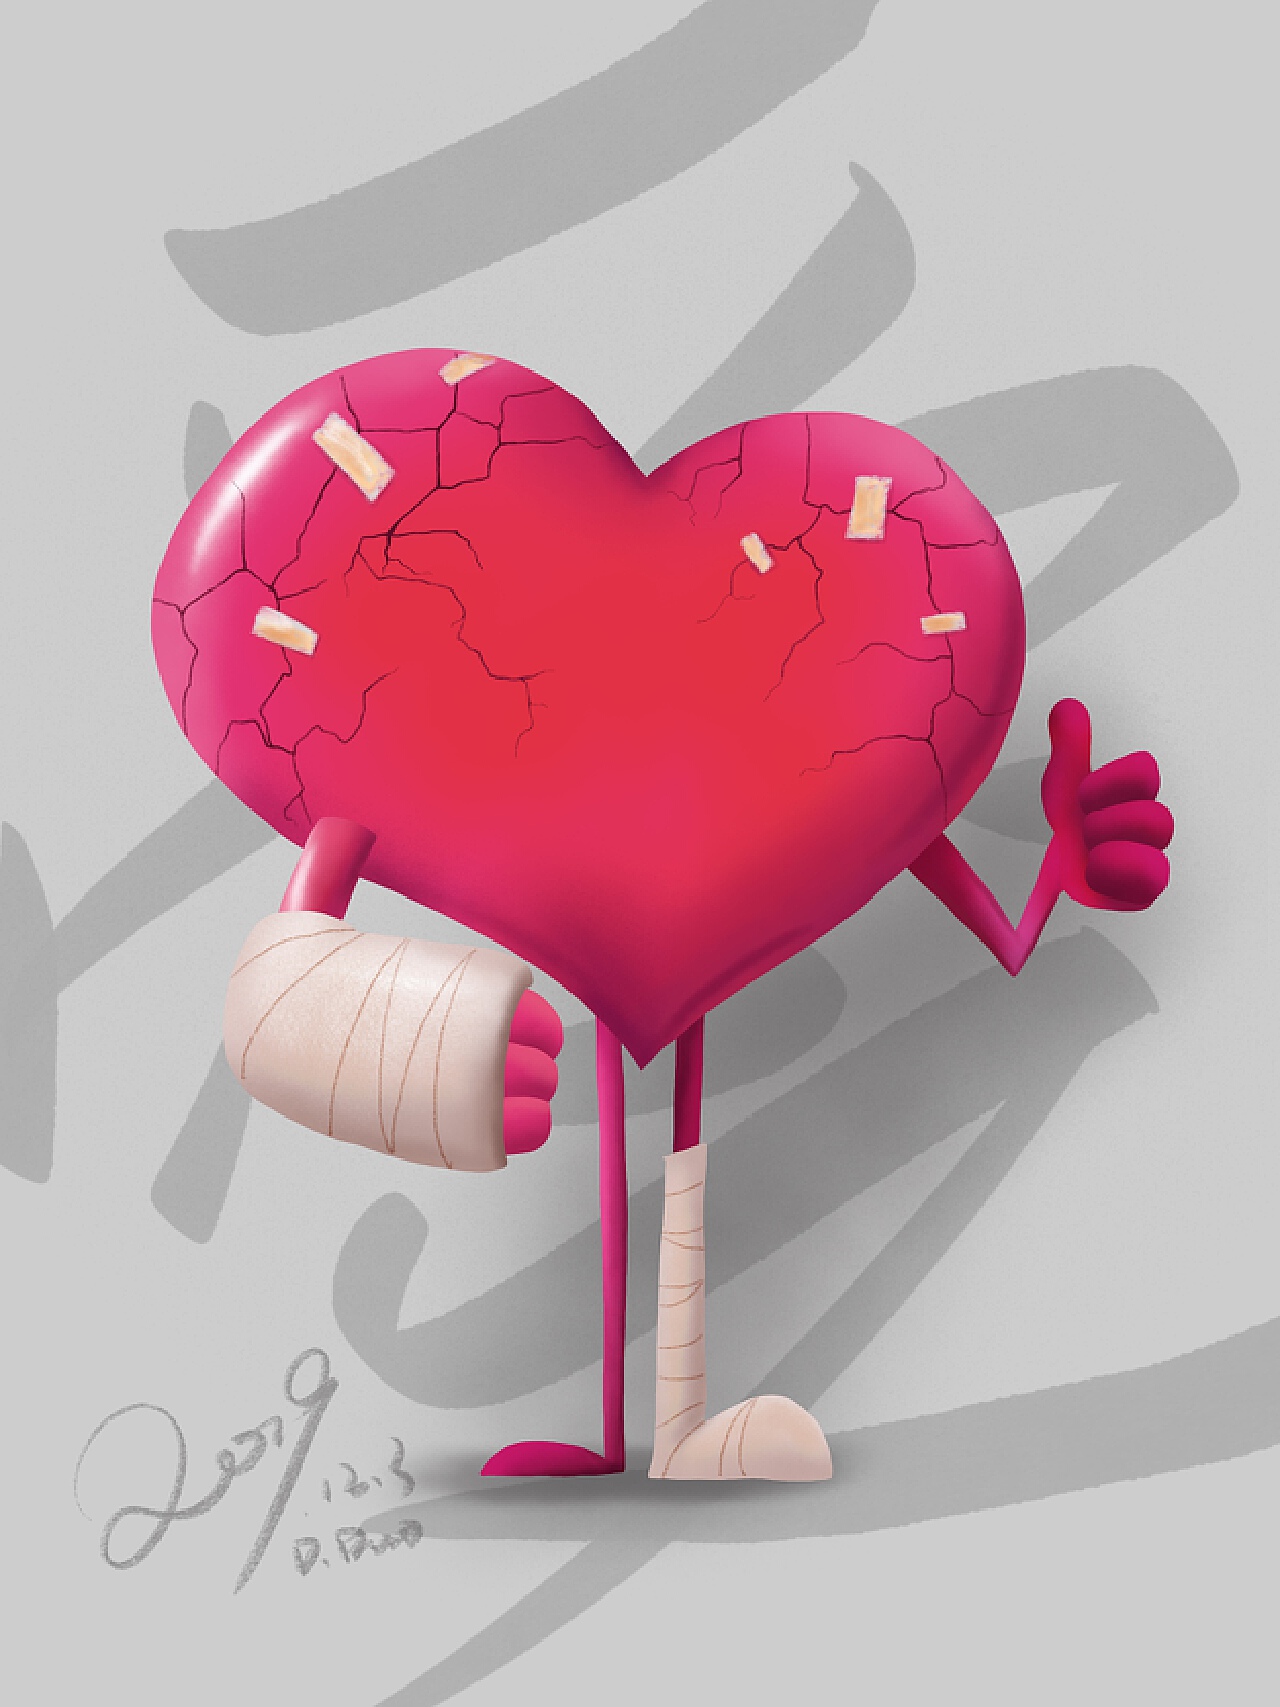 壁纸1024×768受伤的心 爱情主题CG设计壁纸壁纸,爱的心-爱情主题CG设计壁纸壁纸图片-插画壁纸-插画图片素材-桌面壁纸